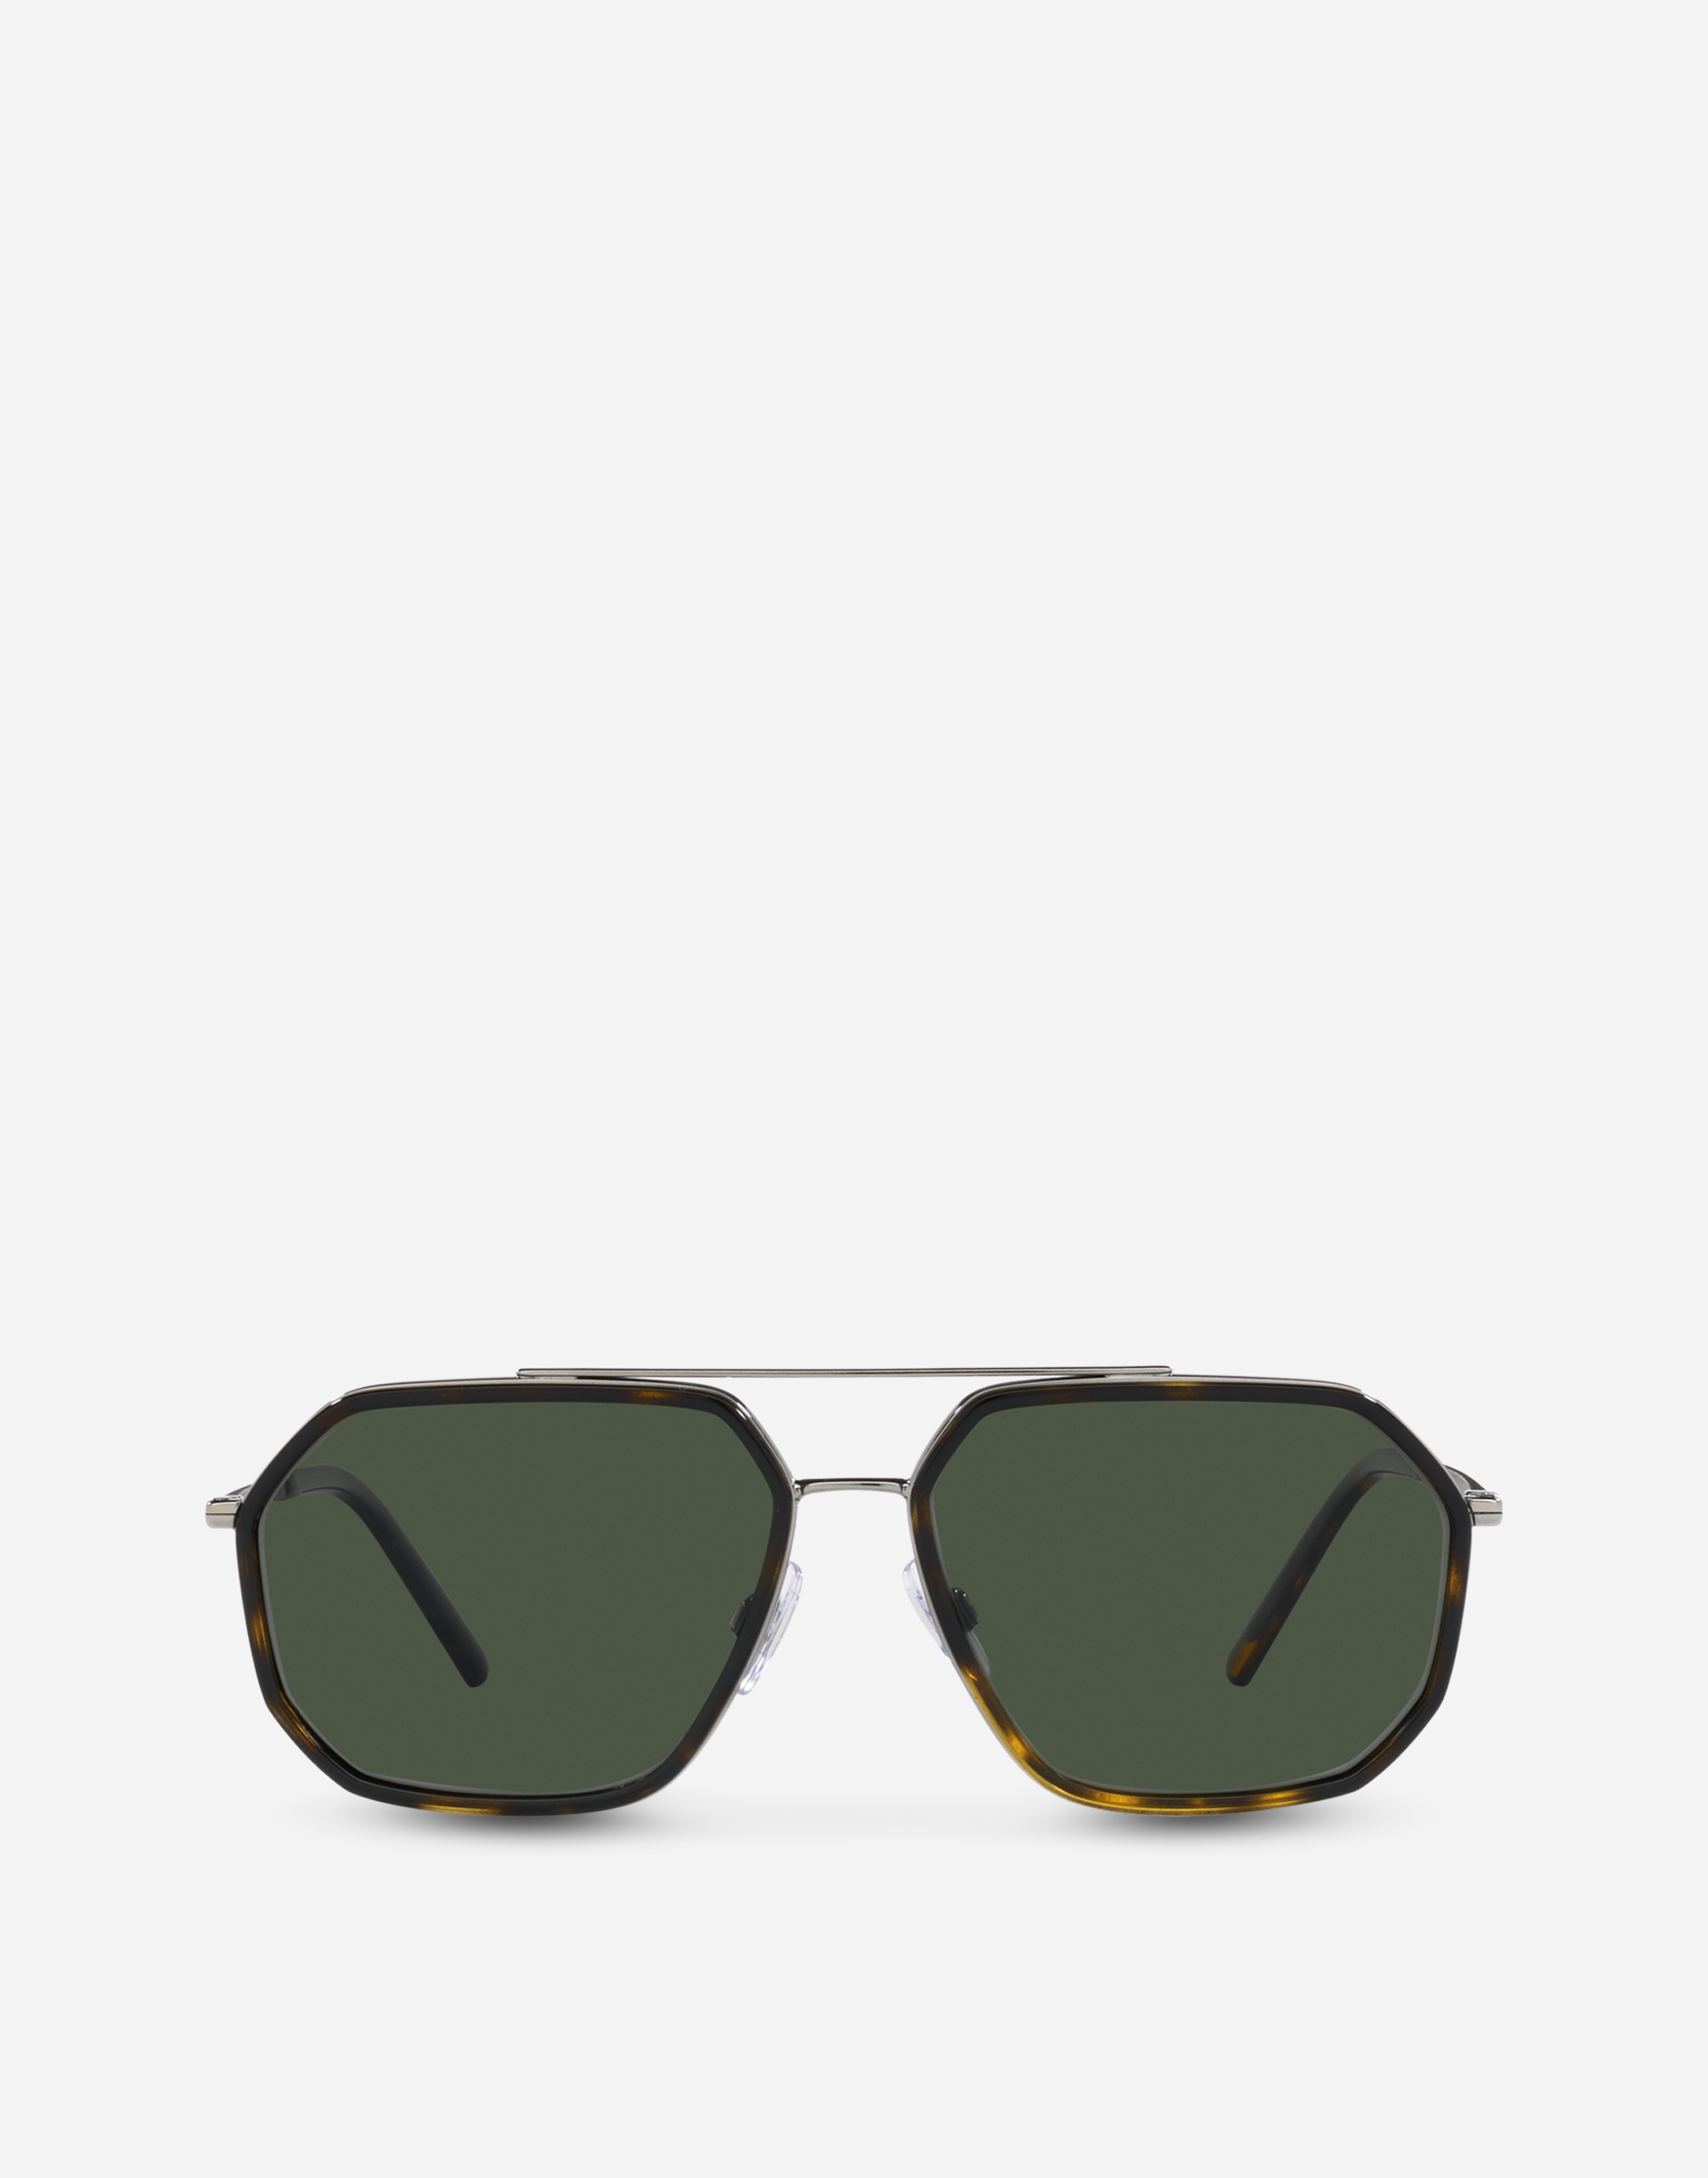 Gros grain sunglasses in Bronze and havana